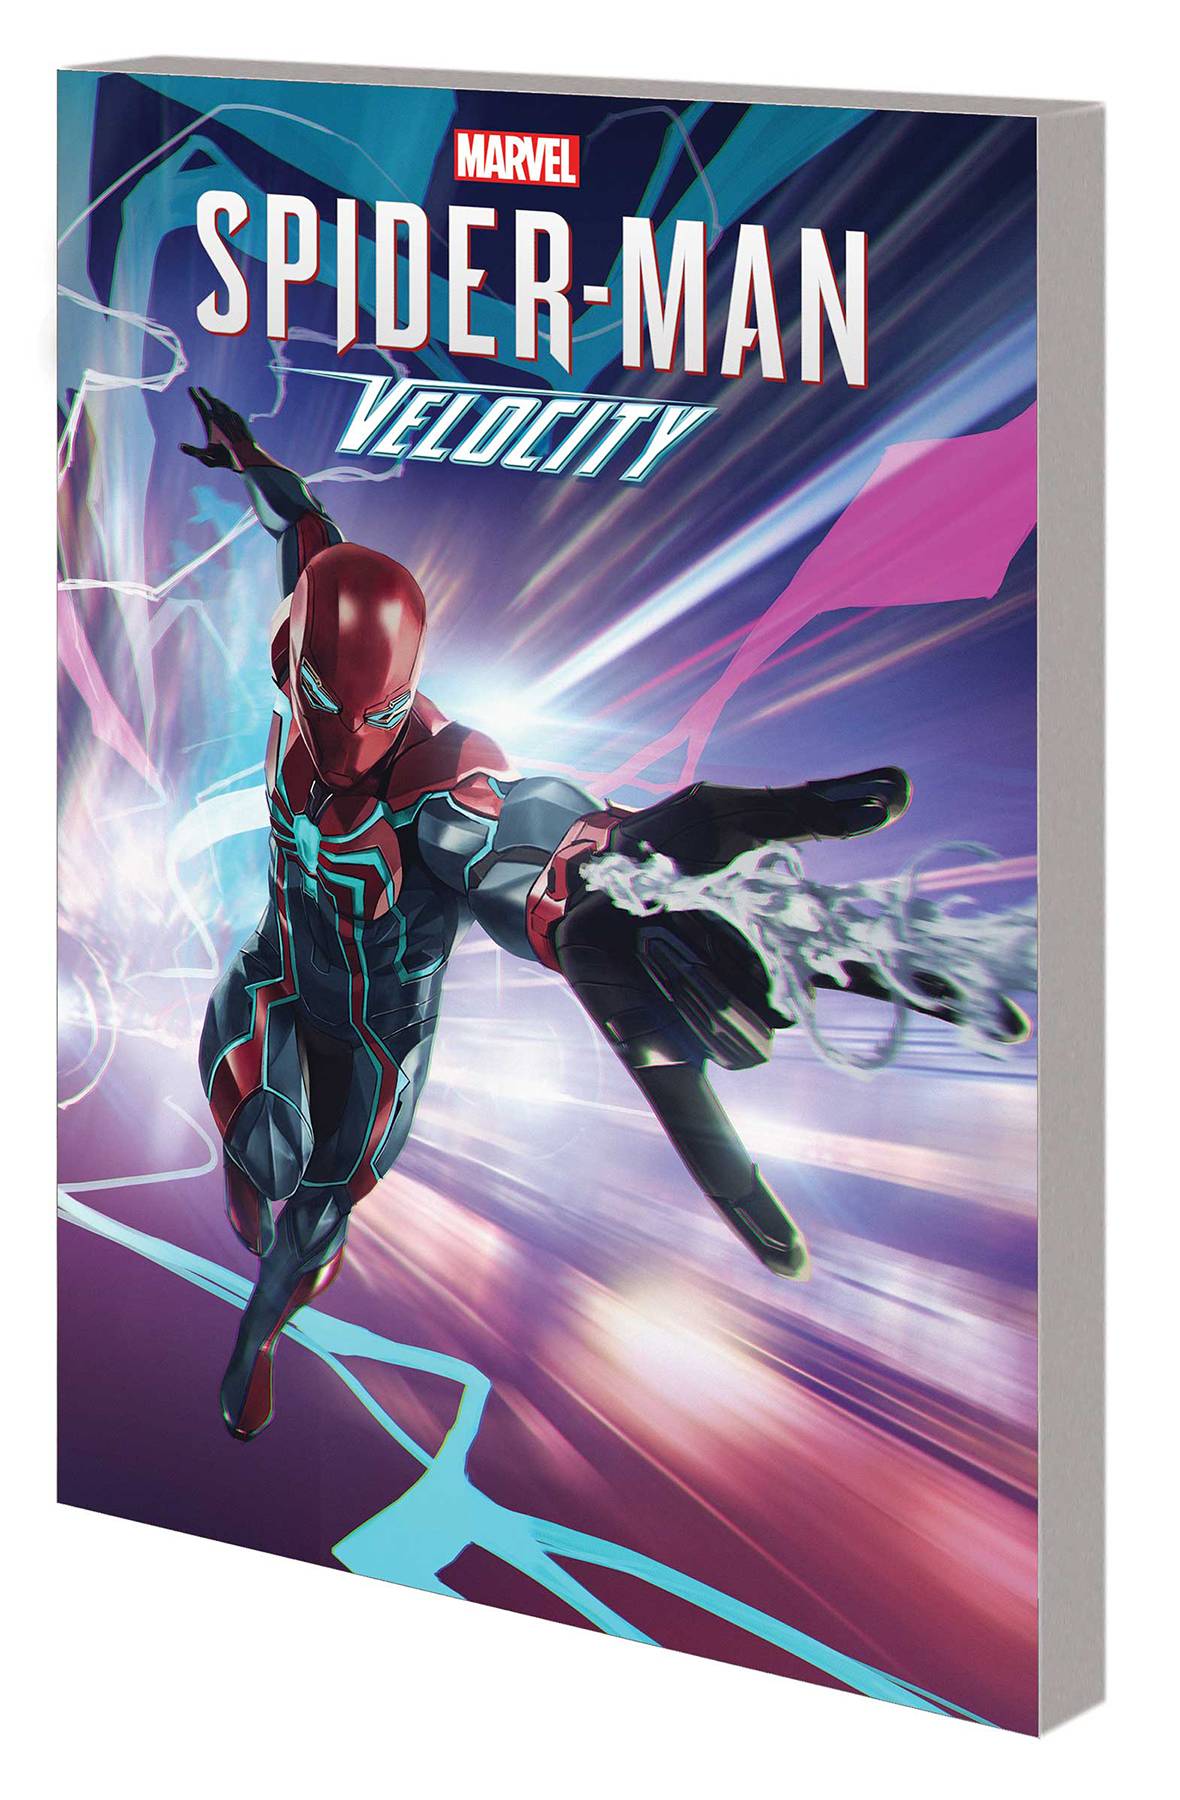 SPIDER-MAN VELOCITY TP | L.A. Mood Comics and Games